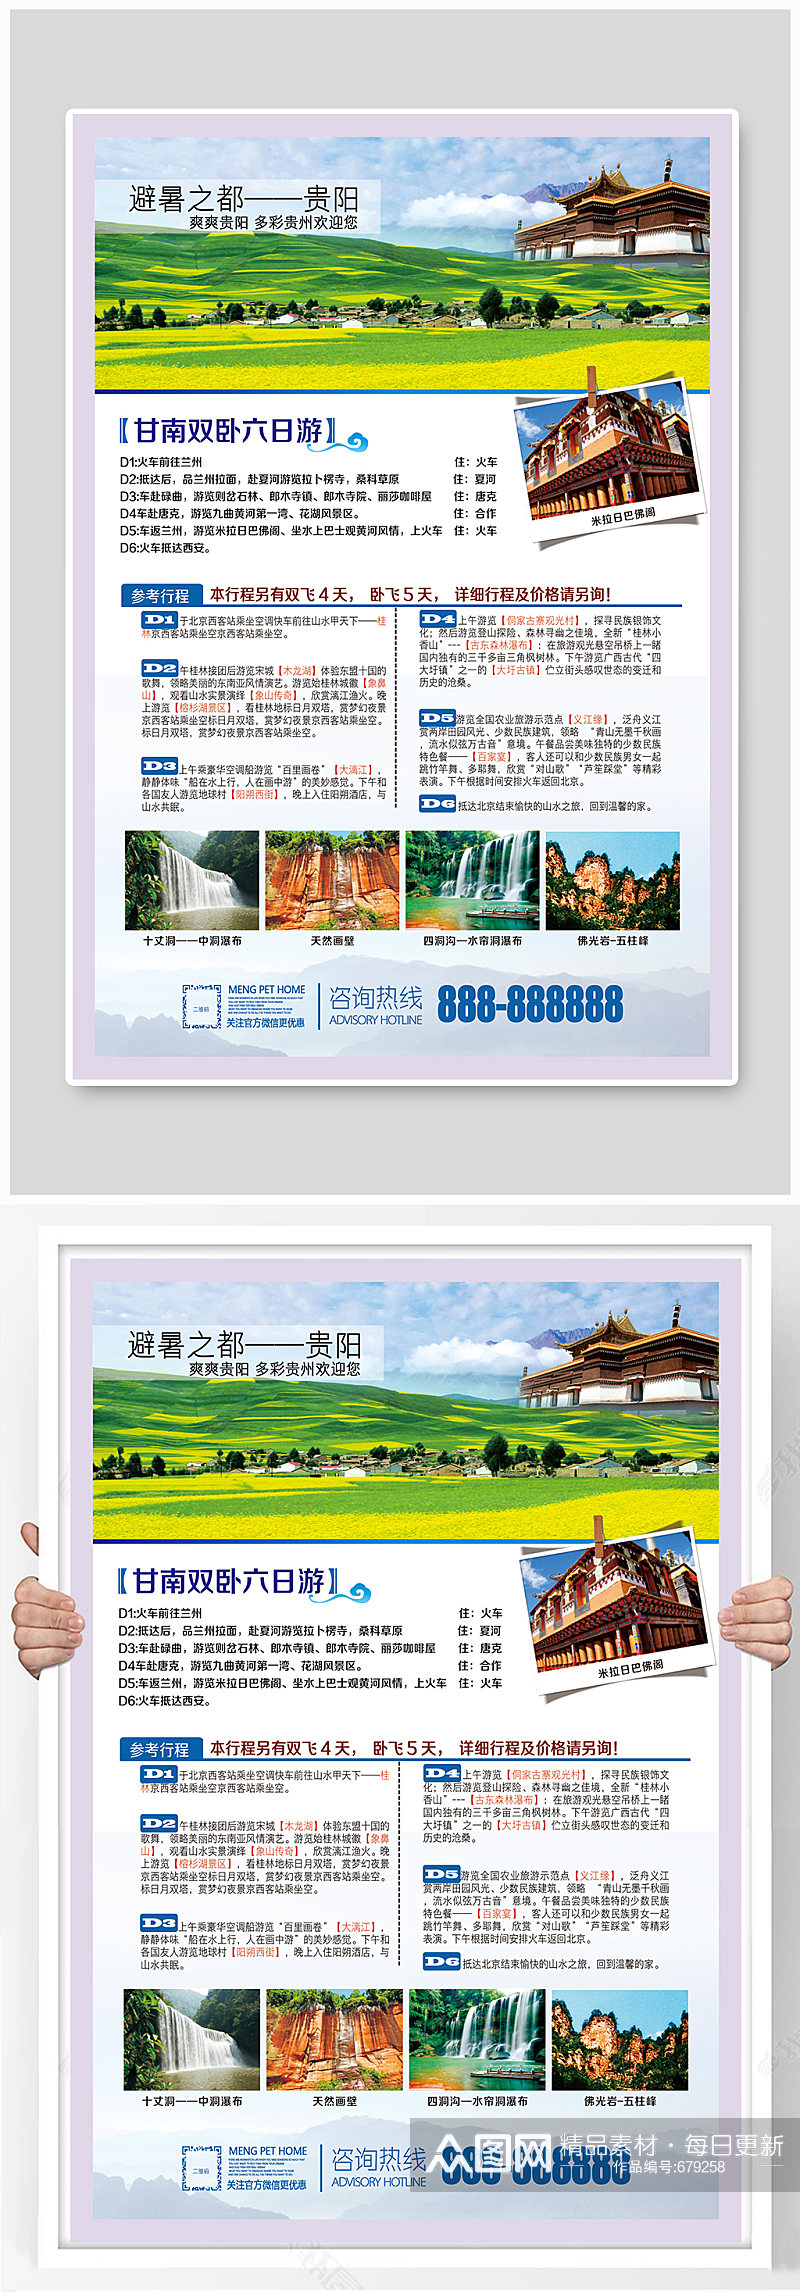 多彩贵州欢迎您旅游海报素材